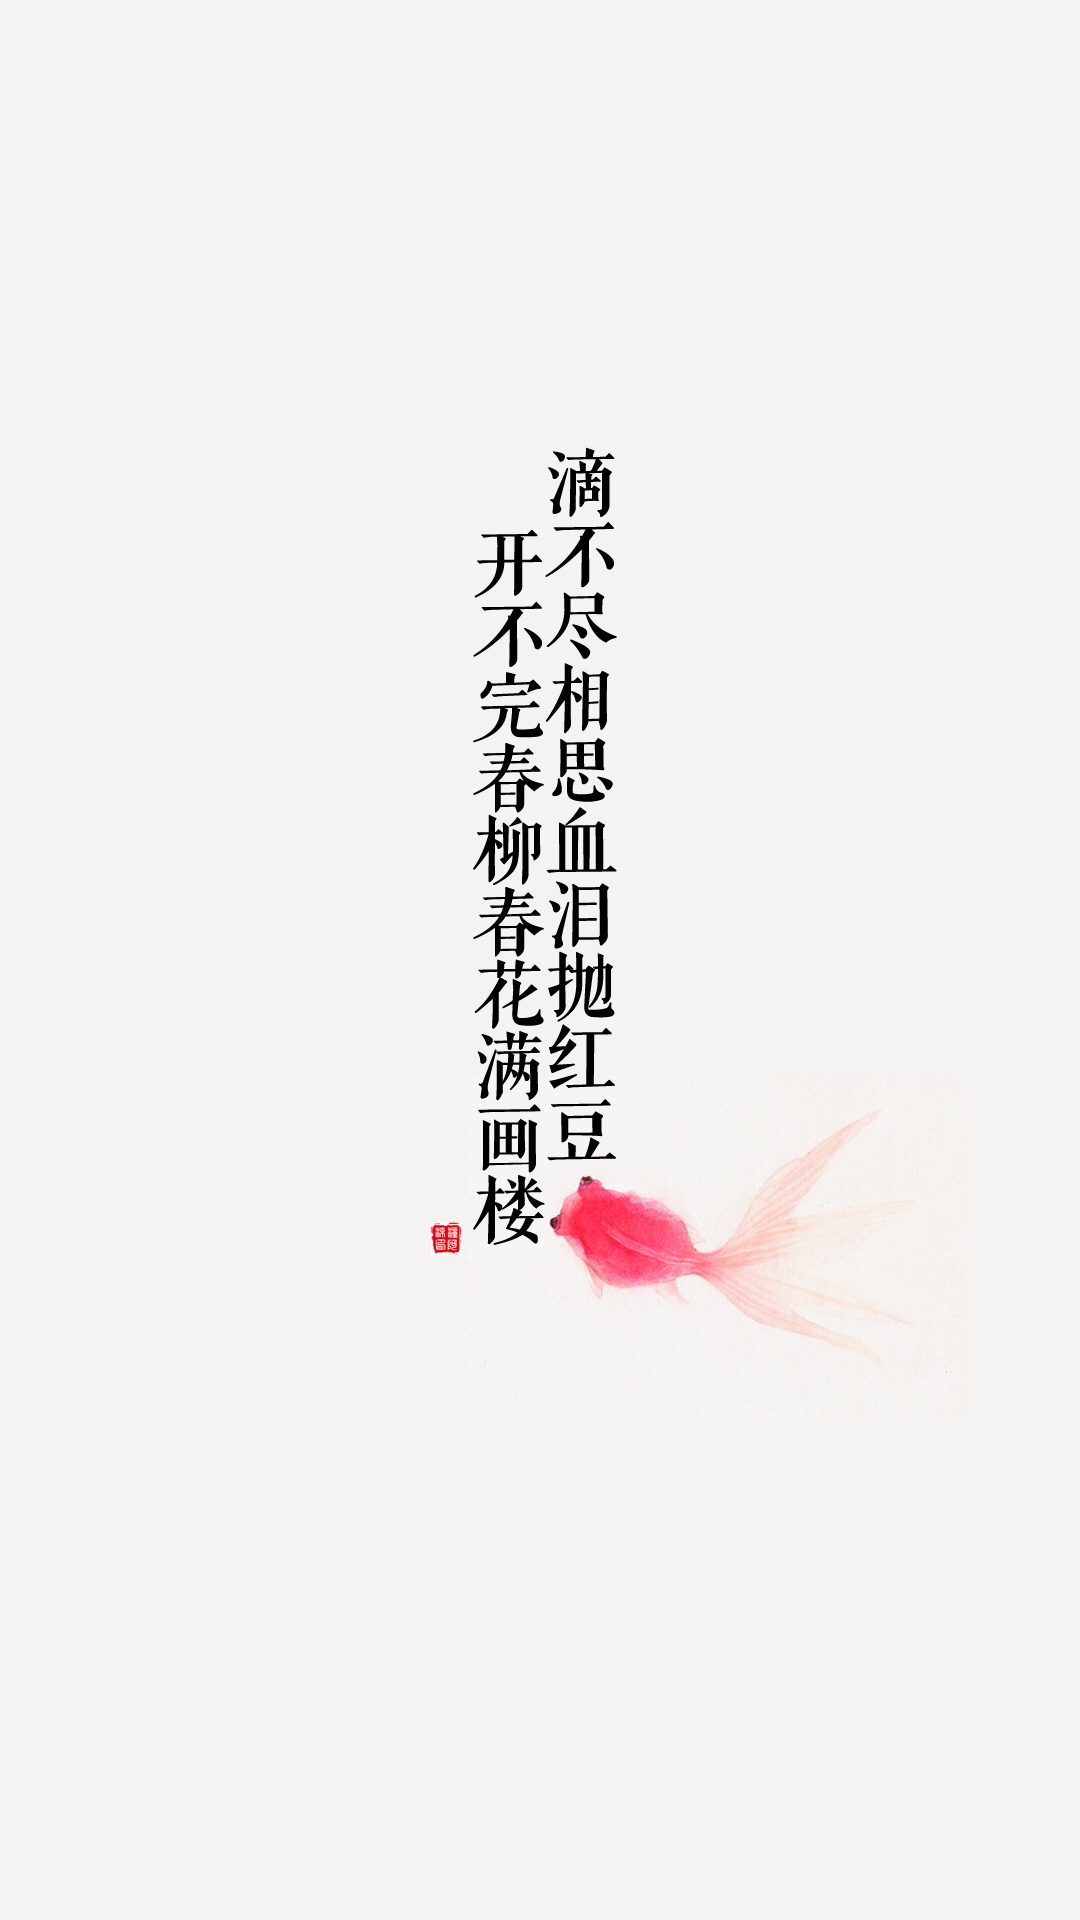 古诗词手机壁纸高清 高清淡雅中国风壁纸(6)